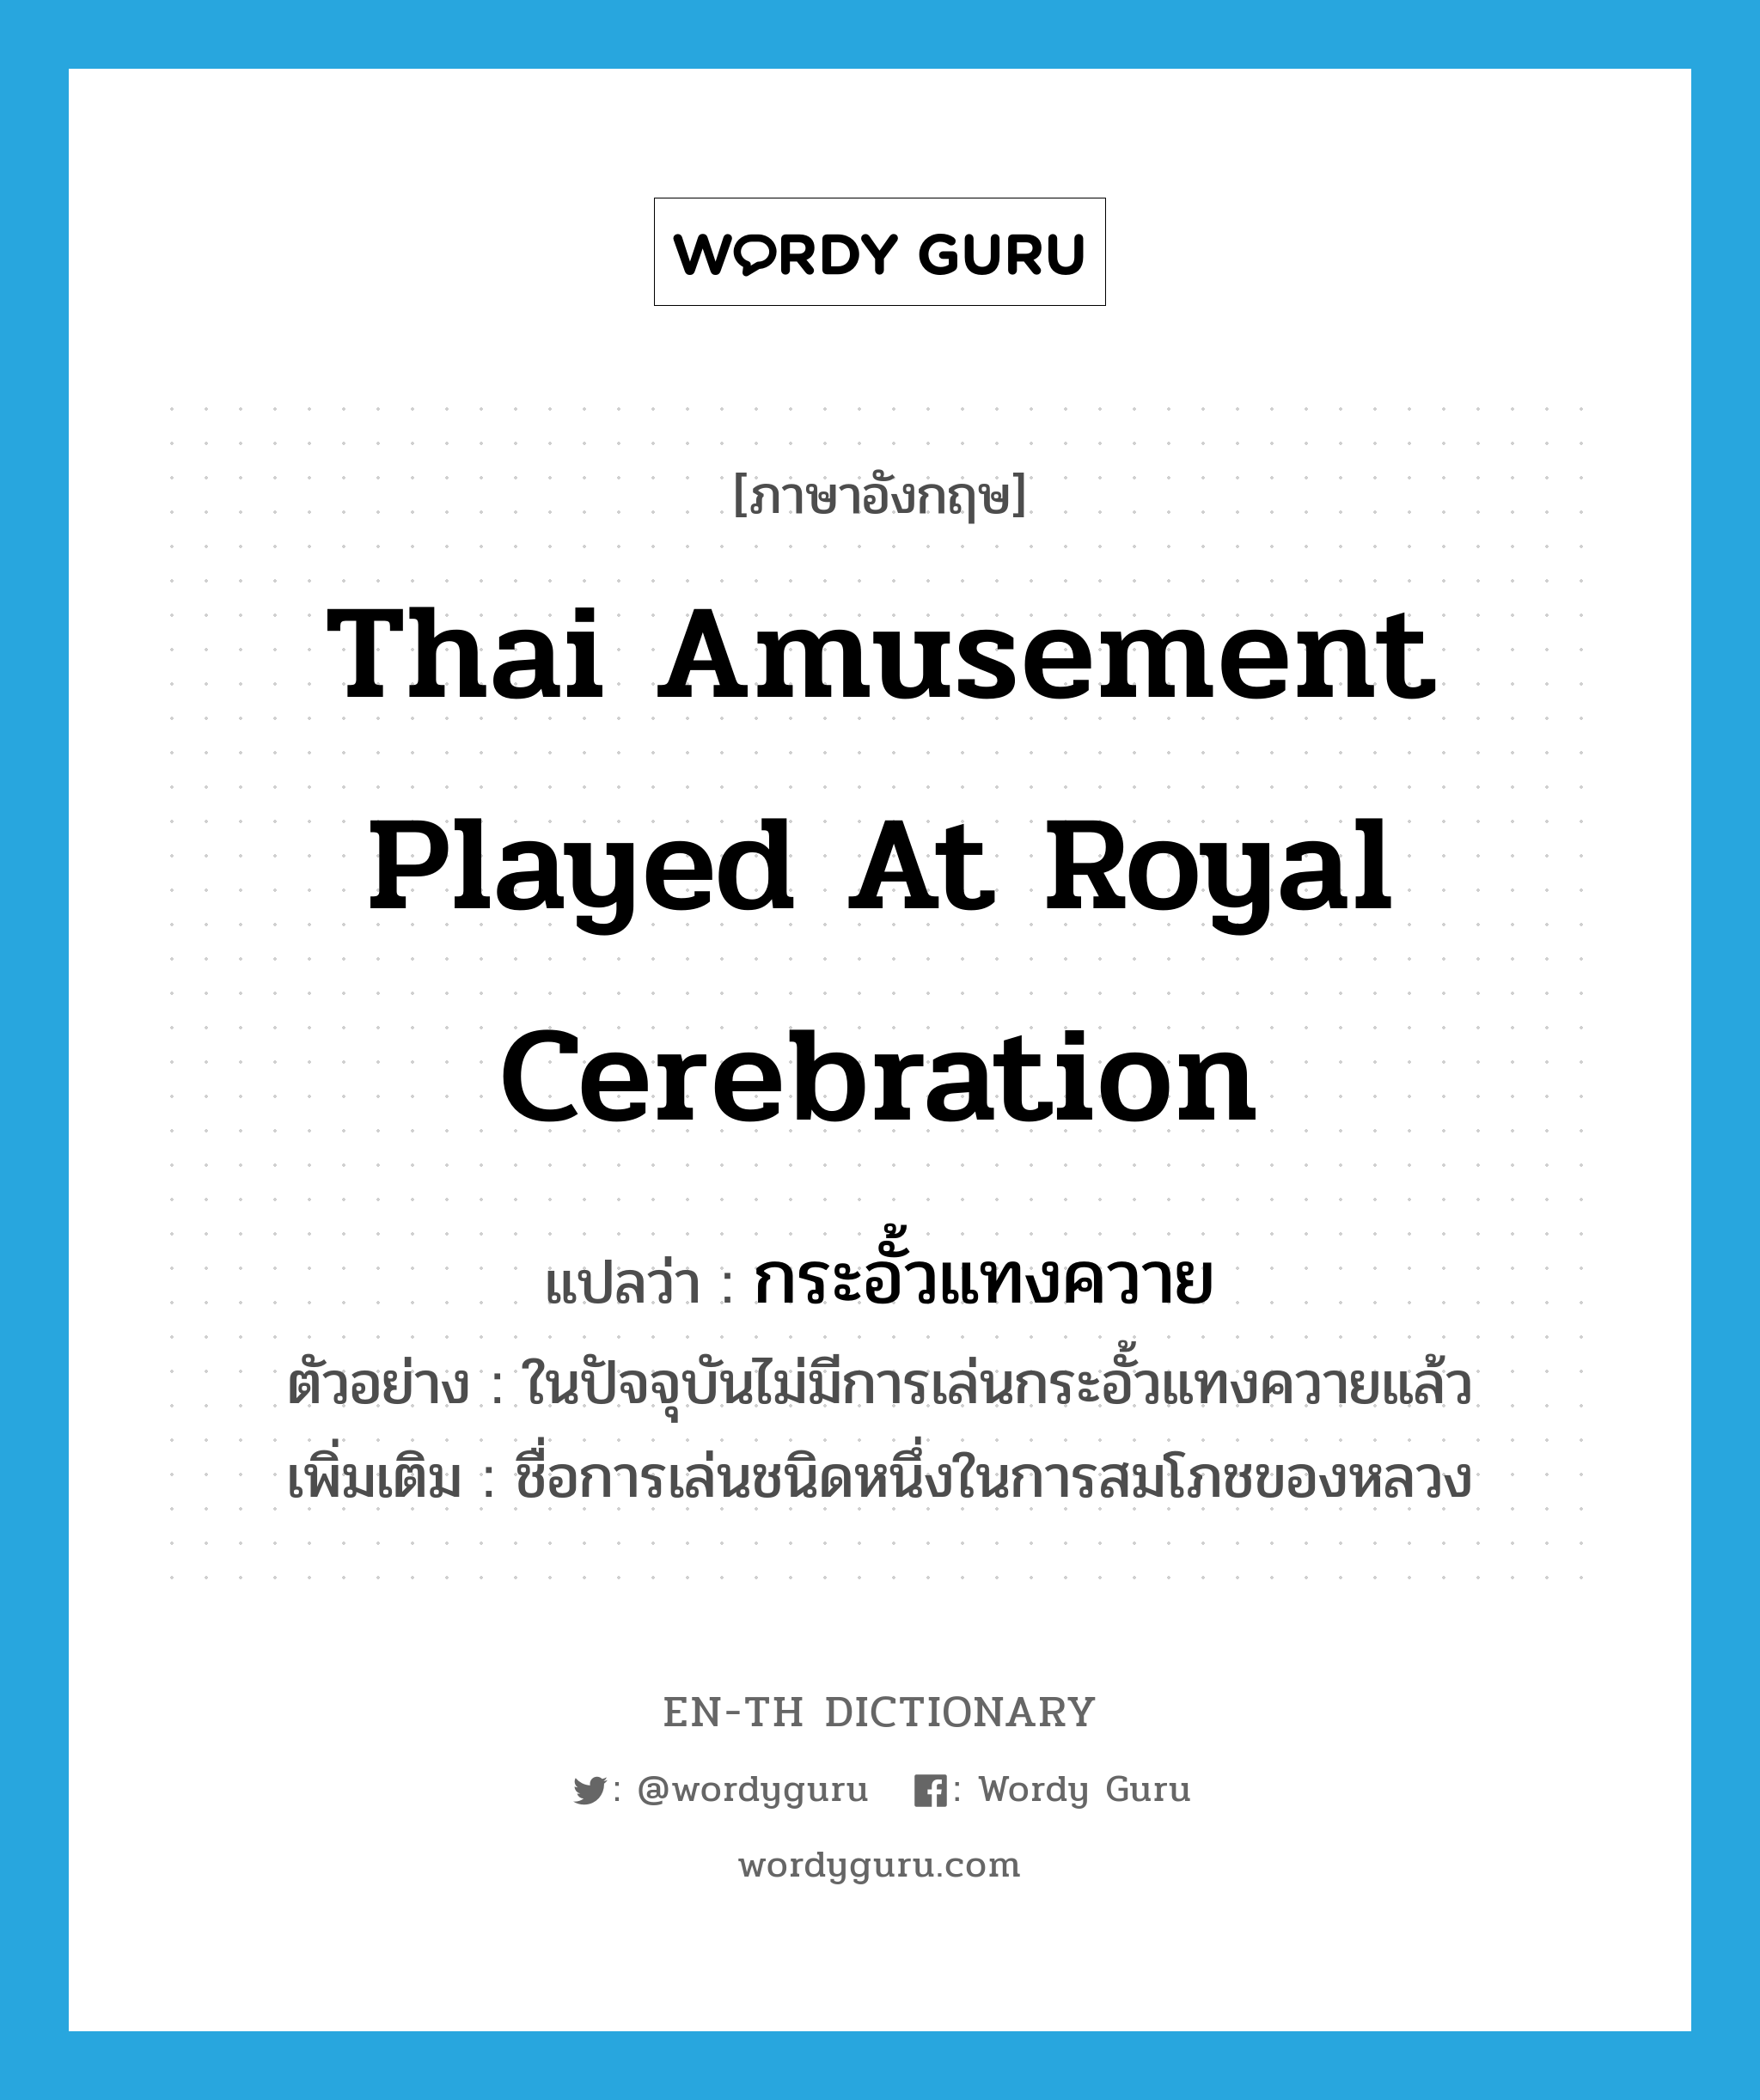 กระอั้วแทงควาย ภาษาอังกฤษ?, คำศัพท์ภาษาอังกฤษ กระอั้วแทงควาย แปลว่า Thai amusement played at royal cerebration ประเภท N ตัวอย่าง ในปัจจุบันไม่มีการเล่นกระอั้วแทงควายแล้ว เพิ่มเติม ชื่อการเล่นชนิดหนึ่งในการสมโภชของหลวง หมวด N